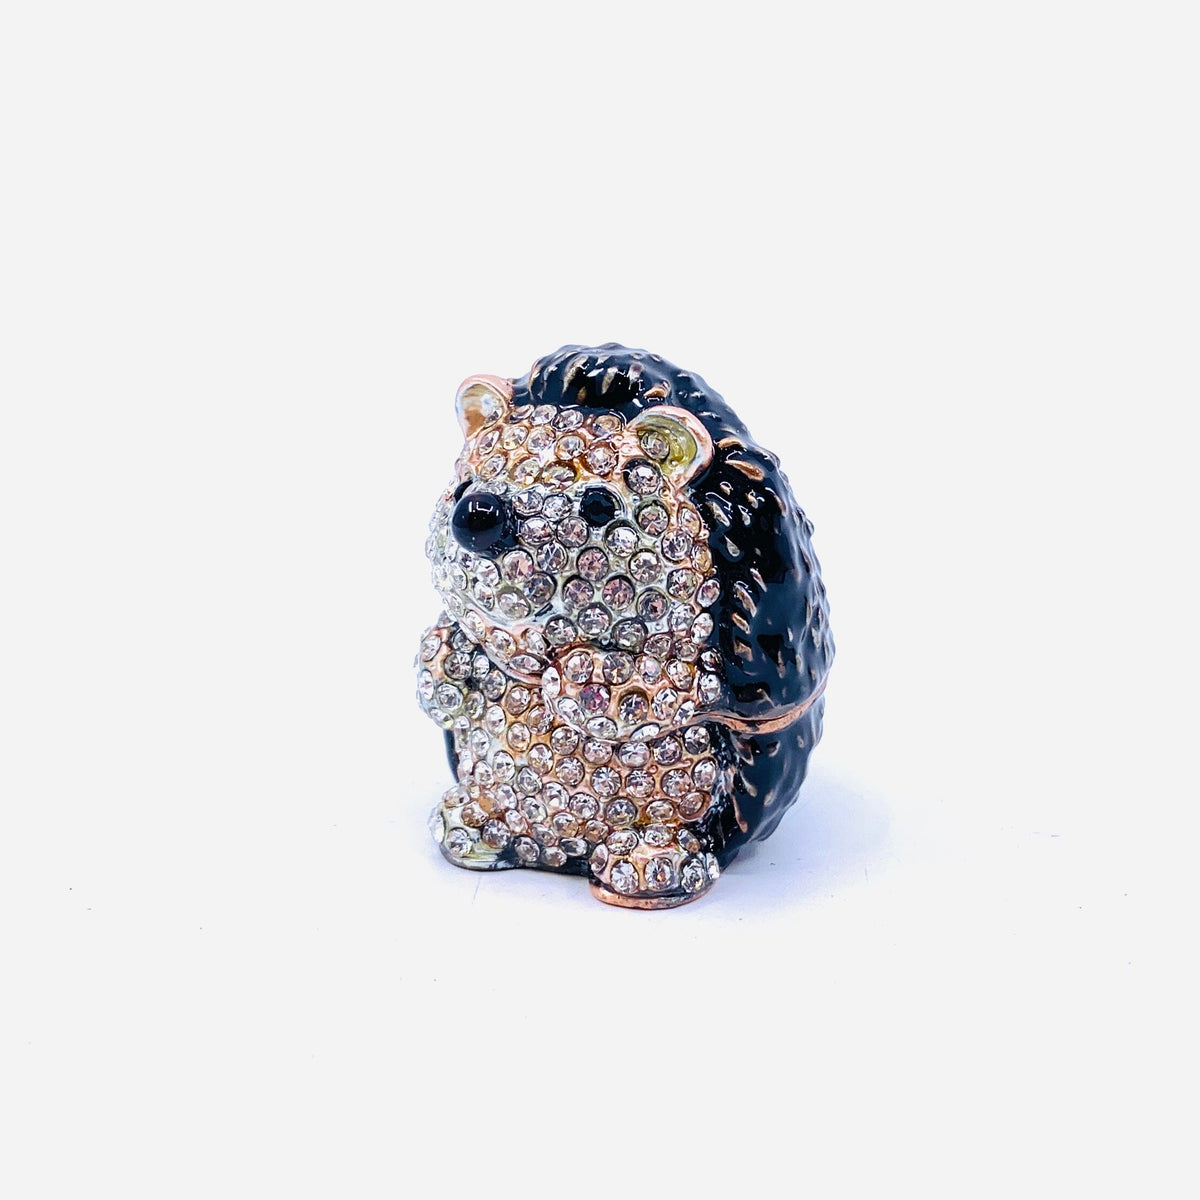 Bejeweled Enamel Trinket Box 17, Hedgehog